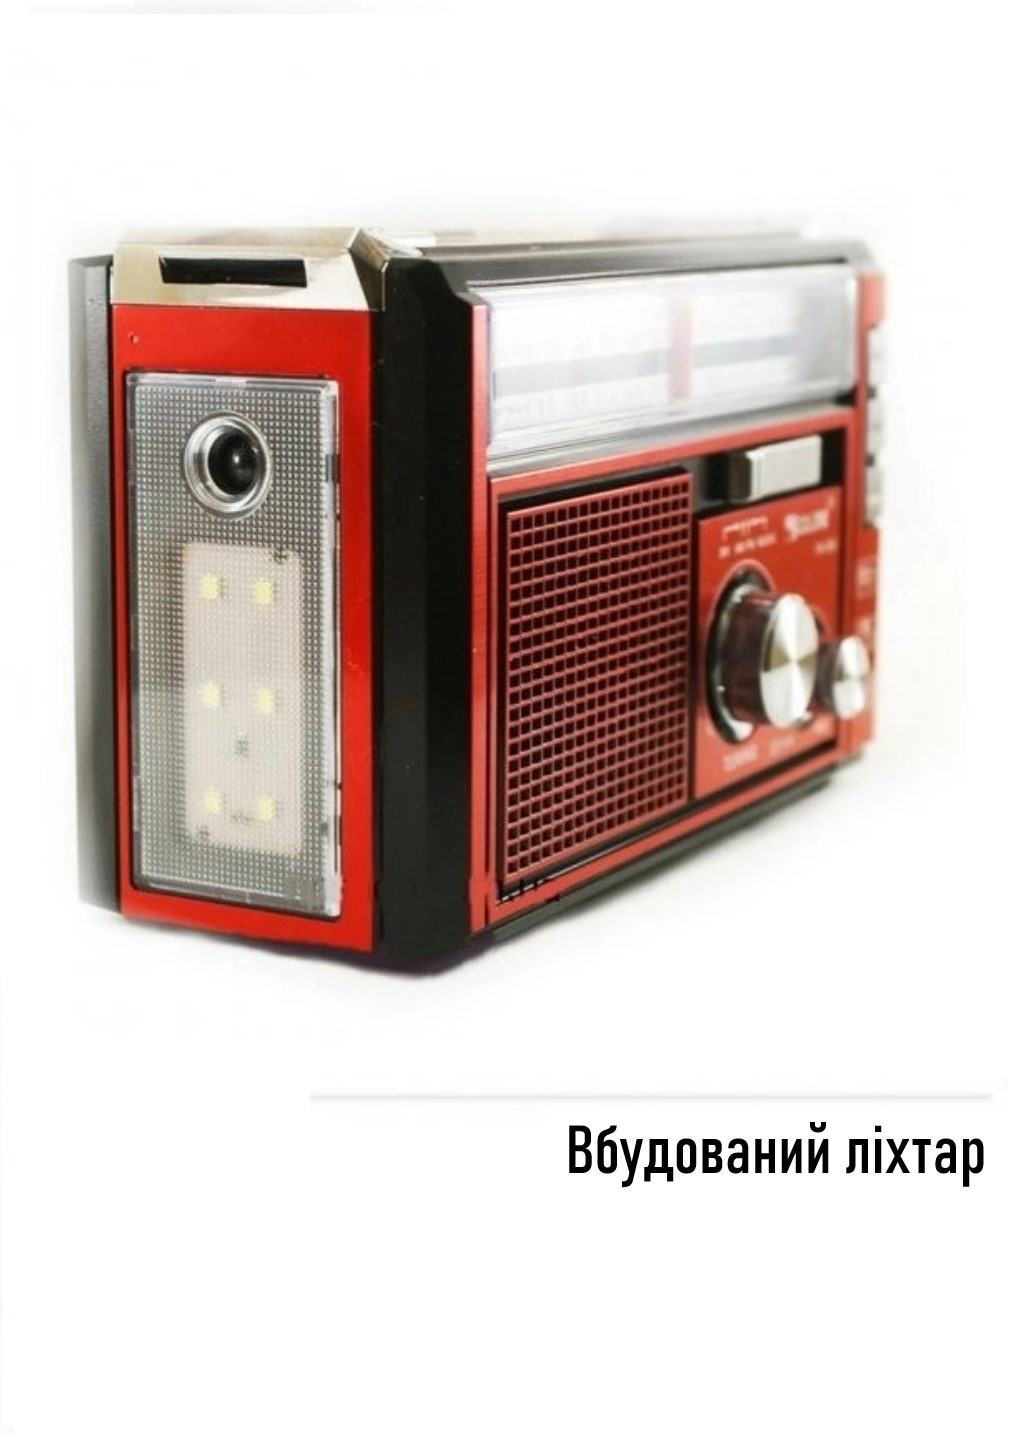 Радиоприёмник портативный аккумуляторный RX-382 Black/Red FM/AM/SW USB AUX Golon (258599395)